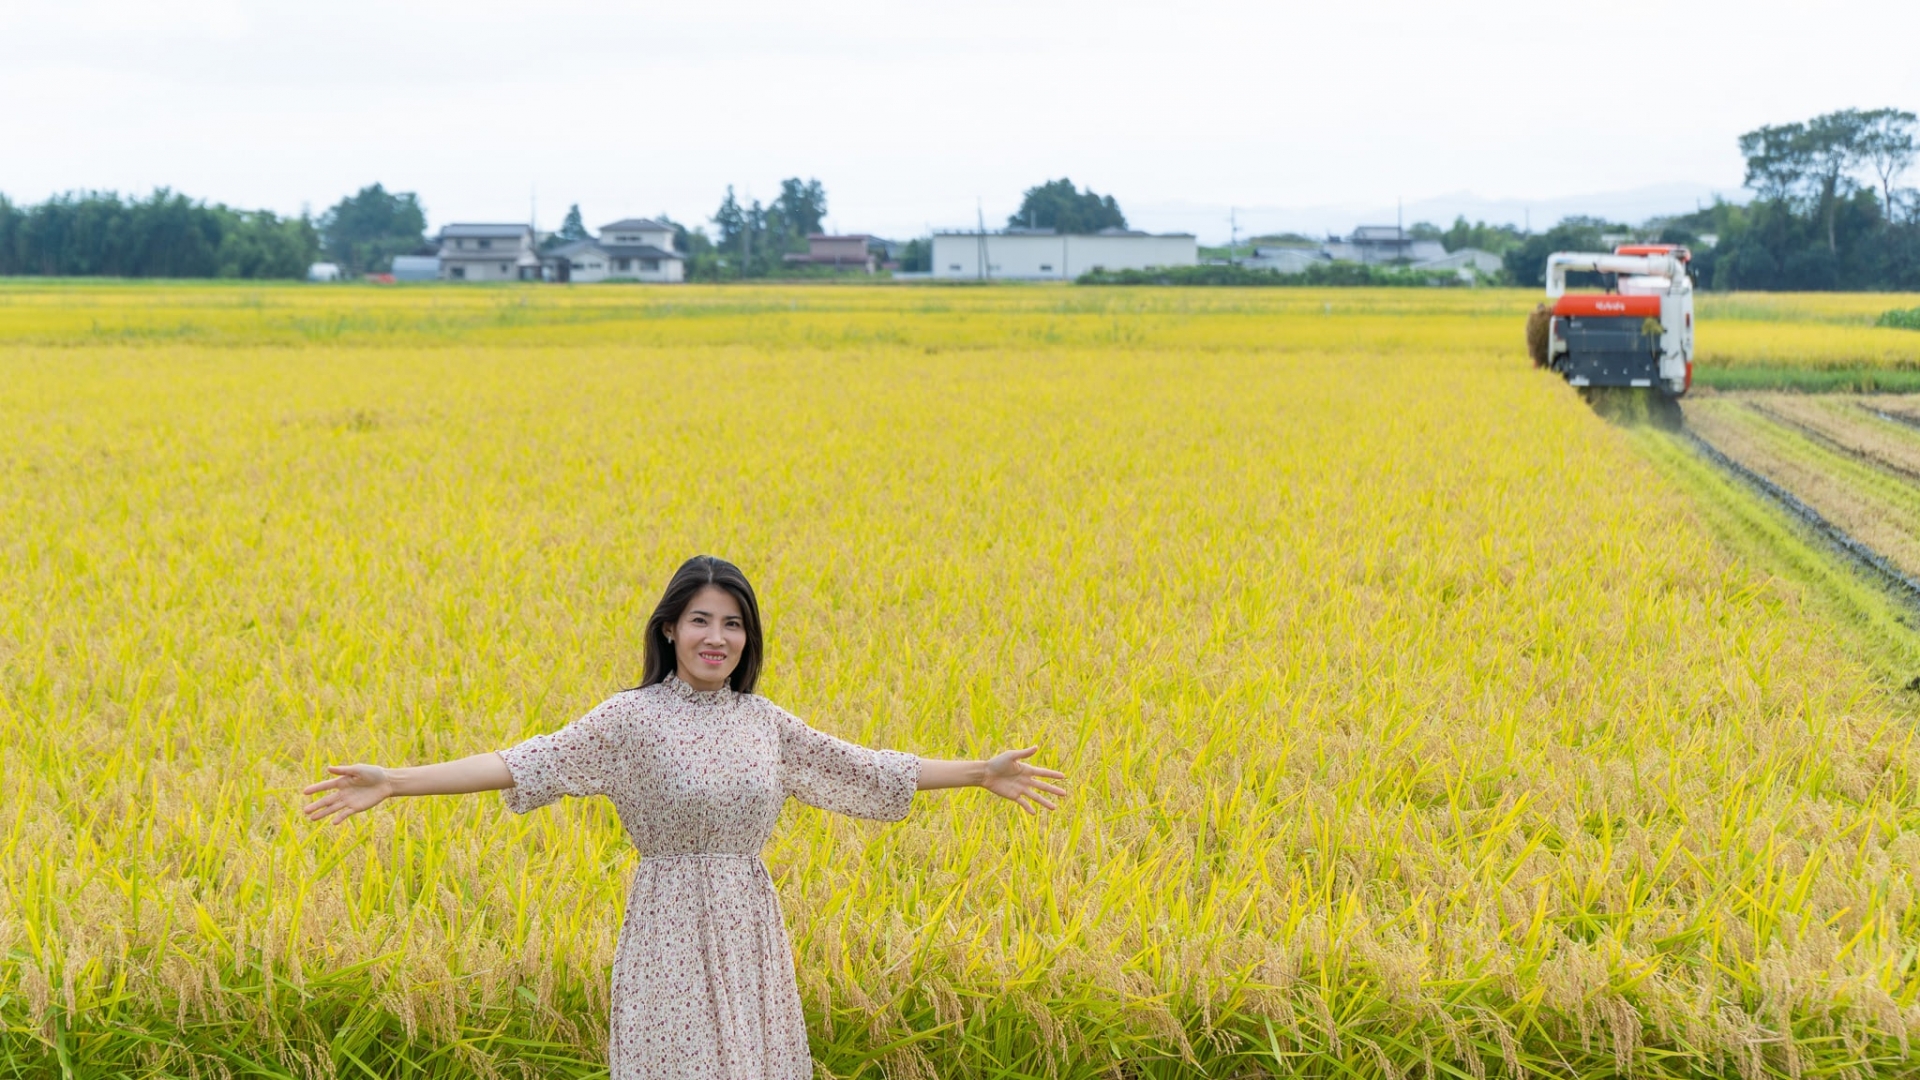 命运般的相遇一年多后，裴小姐前往日本结婚。 没想到婆家有一个多达50公顷的农业农场，其中40公顷专门种植水稻。